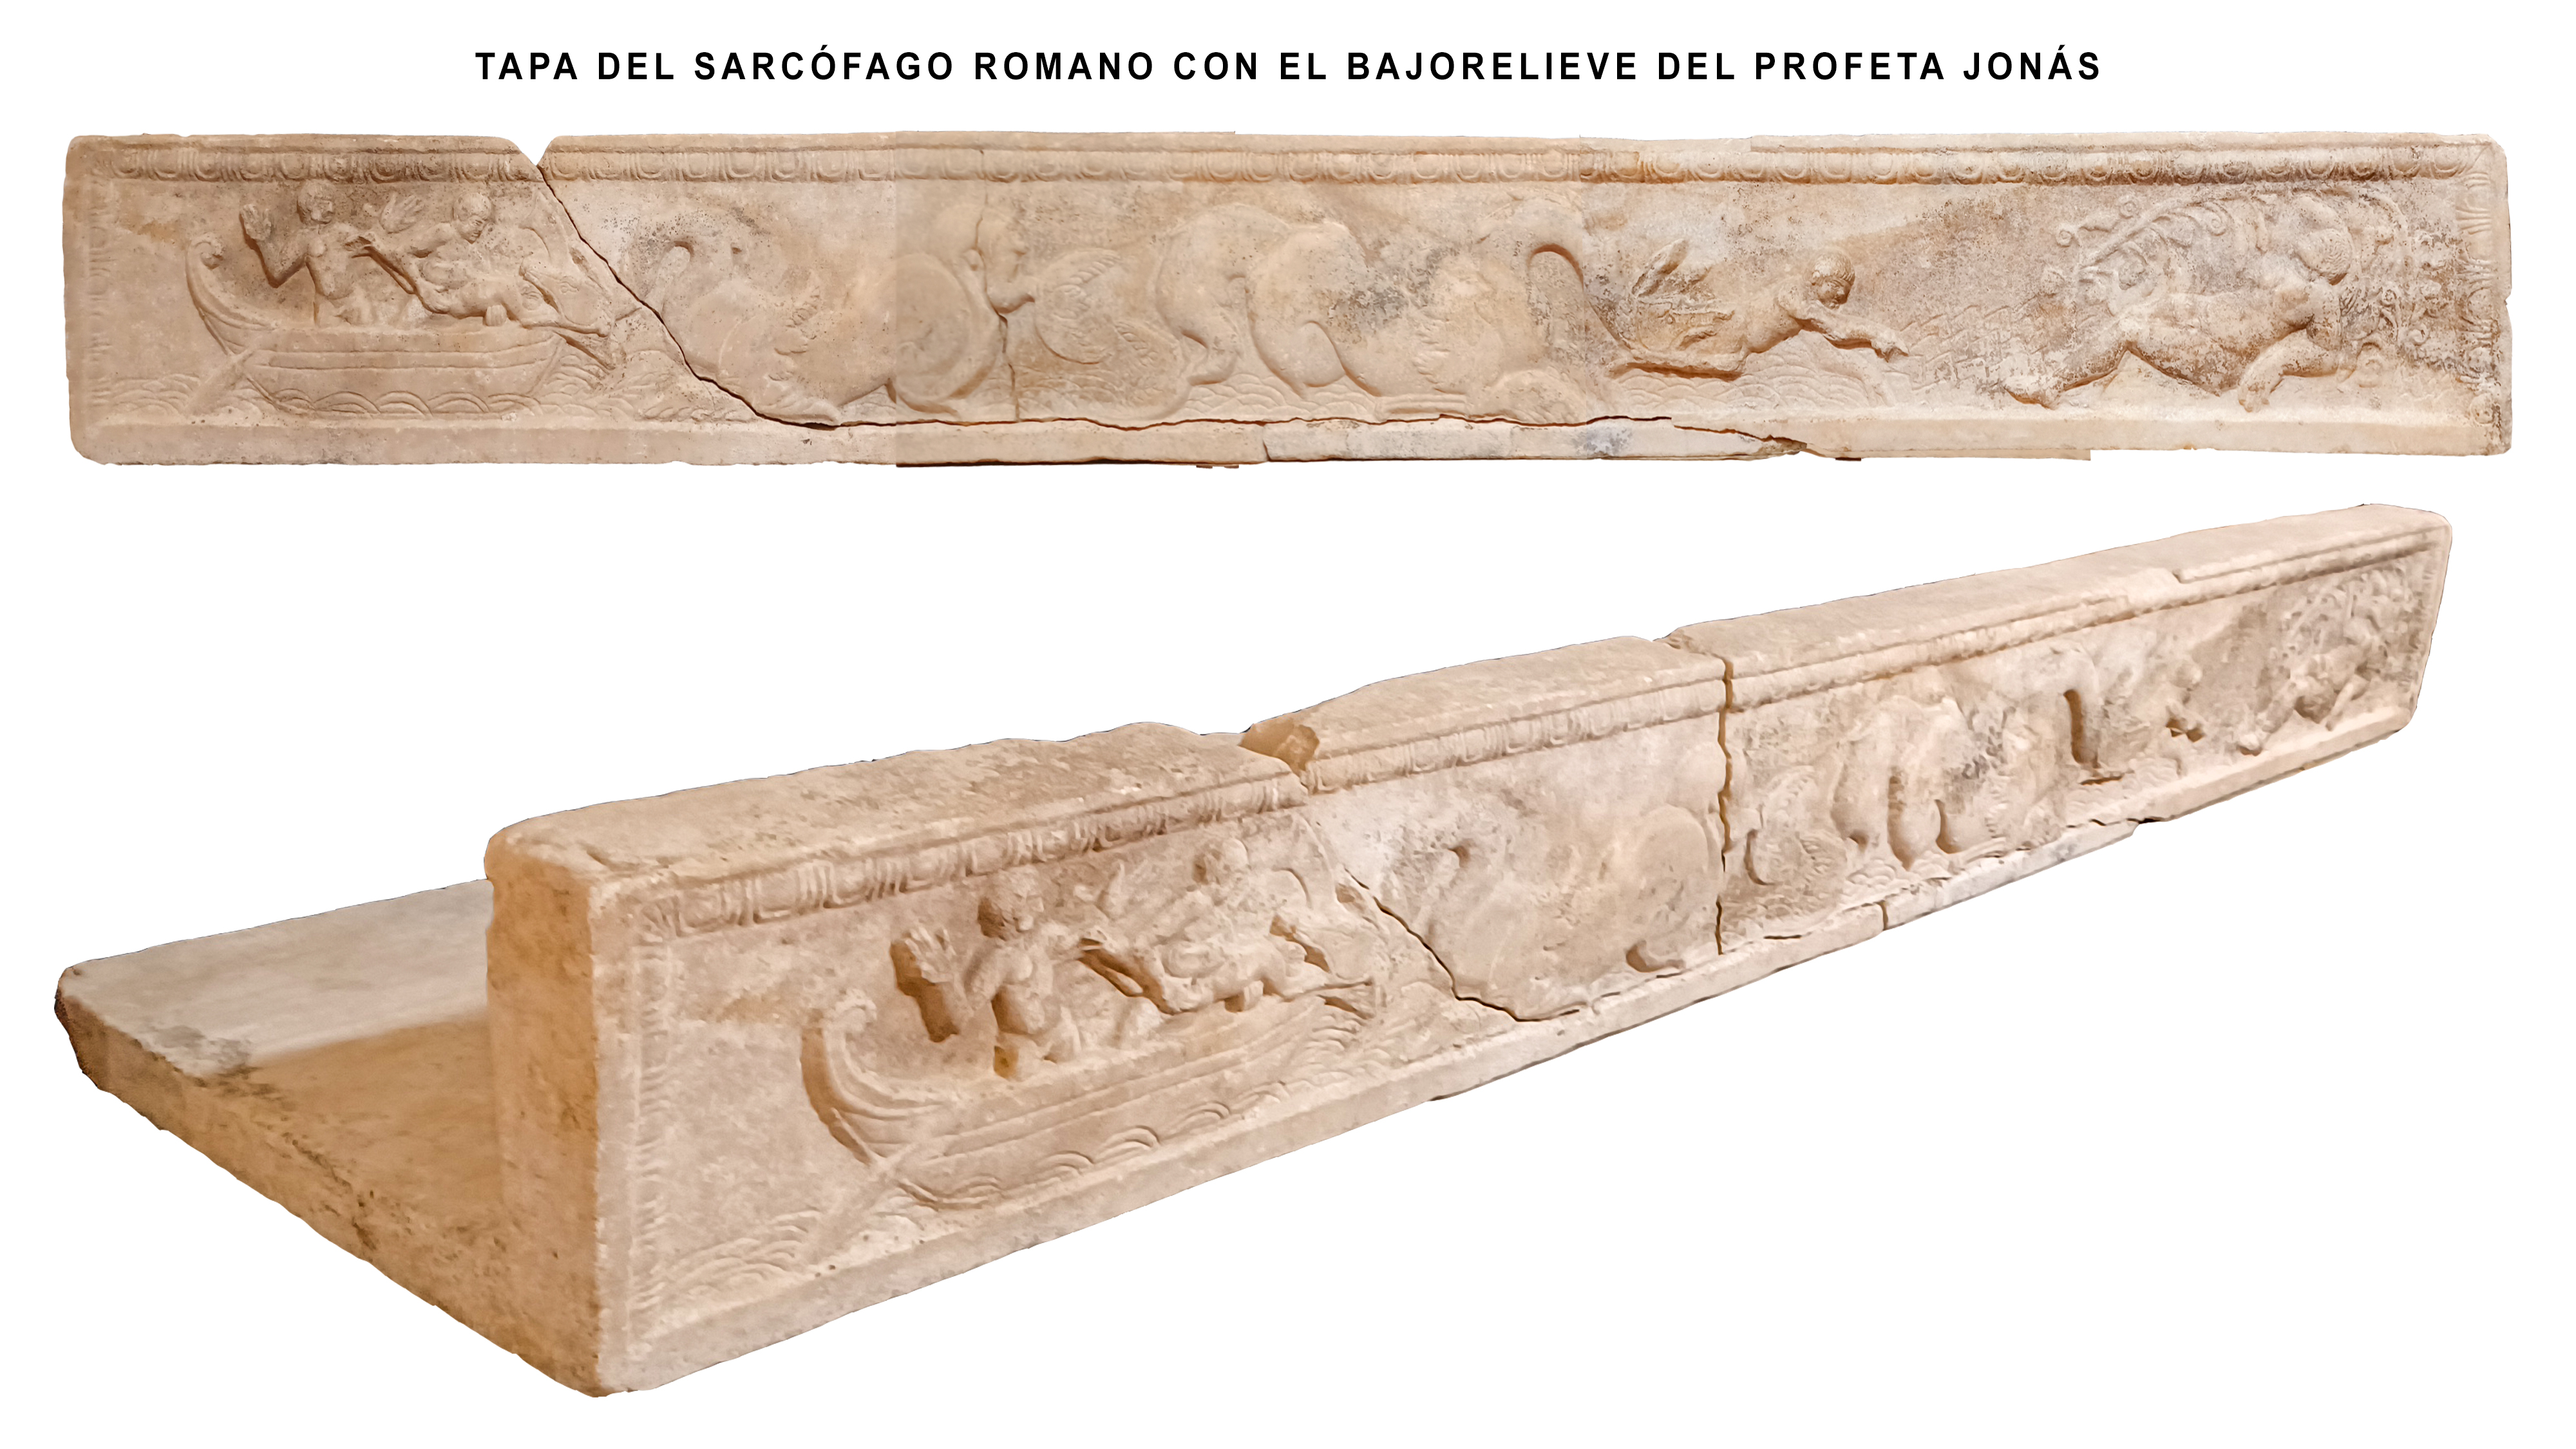 Tapa de sarcofago romano con relieve del pasaje del profeta Jonás